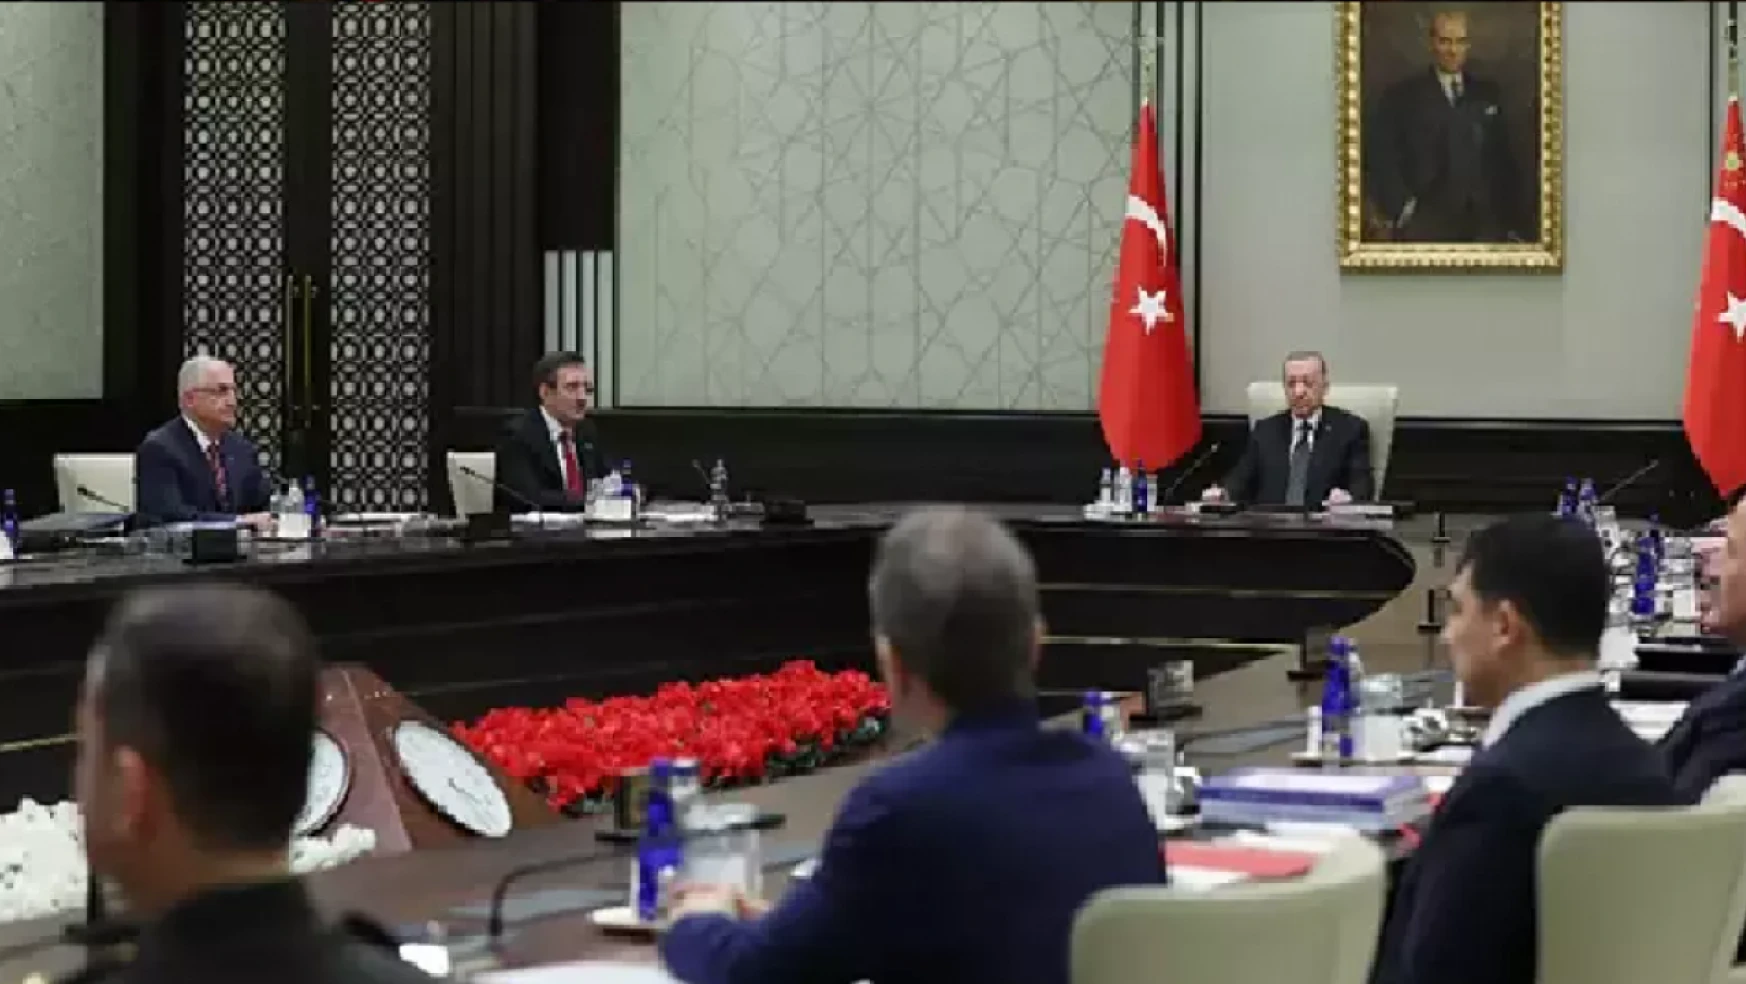 Milli Güvenlik Kurulu (MGK) Toplantısı, Cumhurbaşkanı Recep Tayyip Erdoğan başkanlığında Beştepe'de başladı.